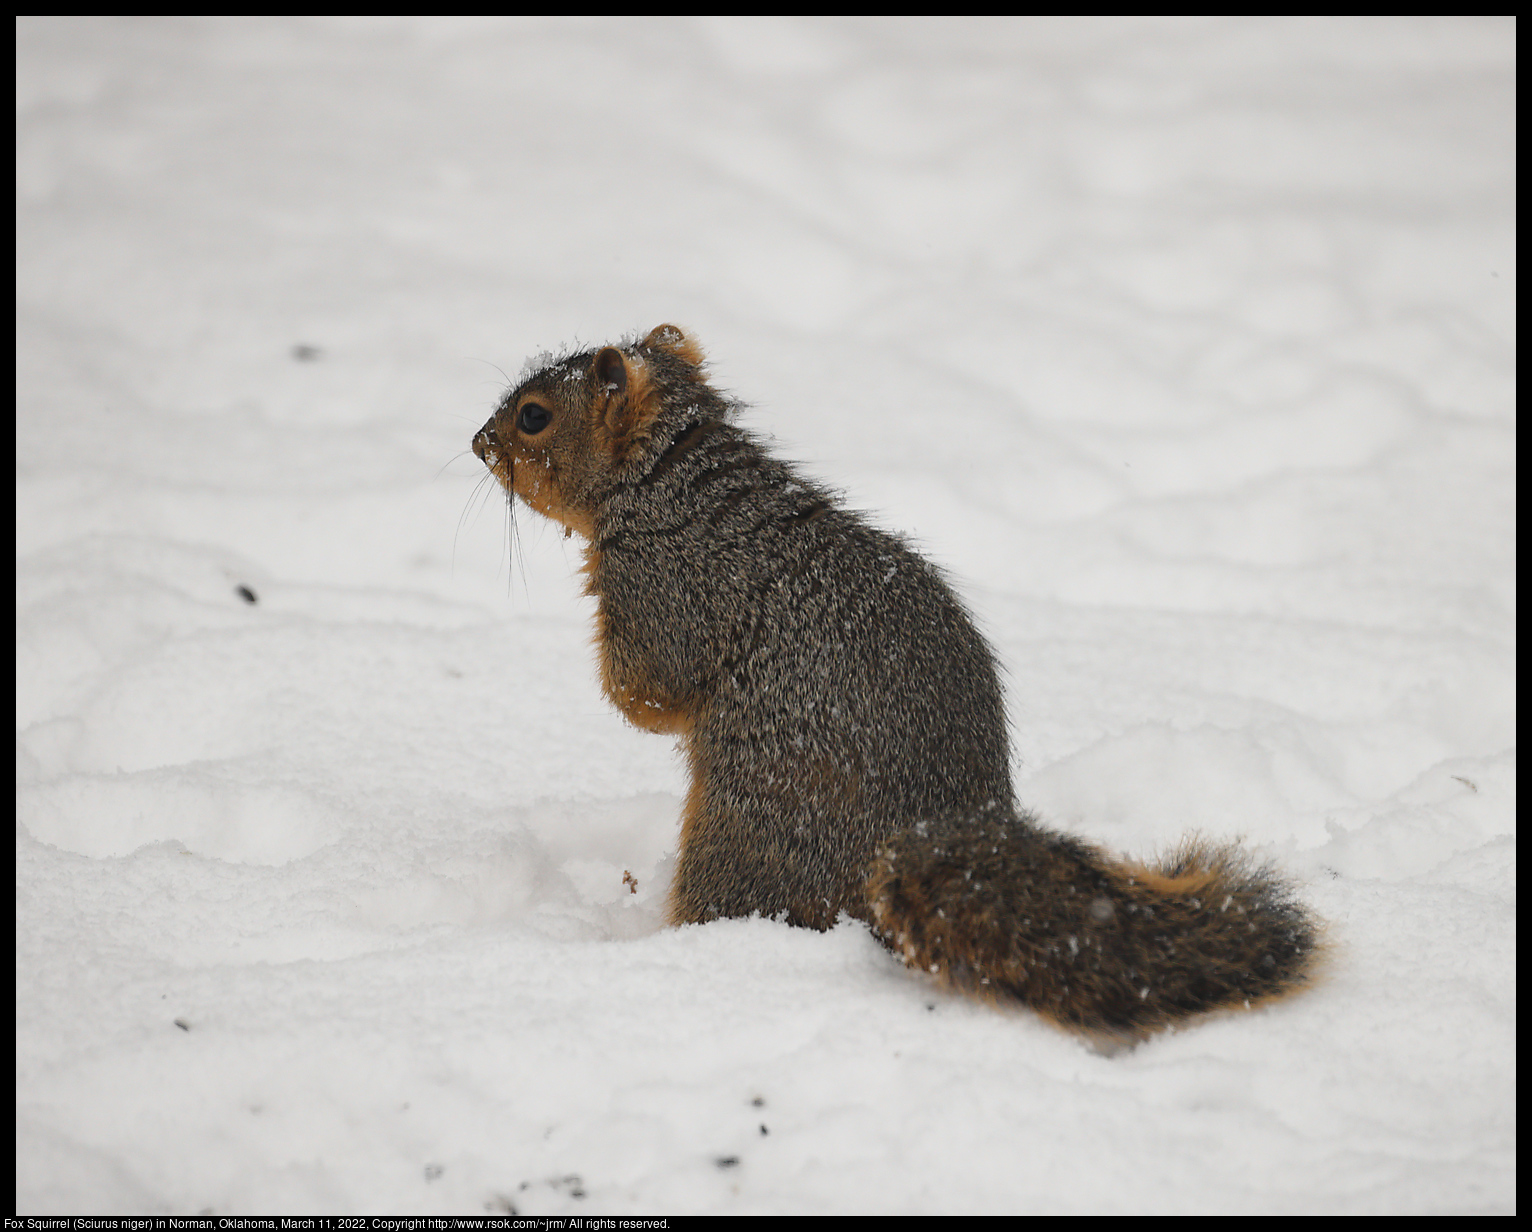 Fox Squirrel (Sciurus niger) in Norman, Oklahoma, March 11, 2022